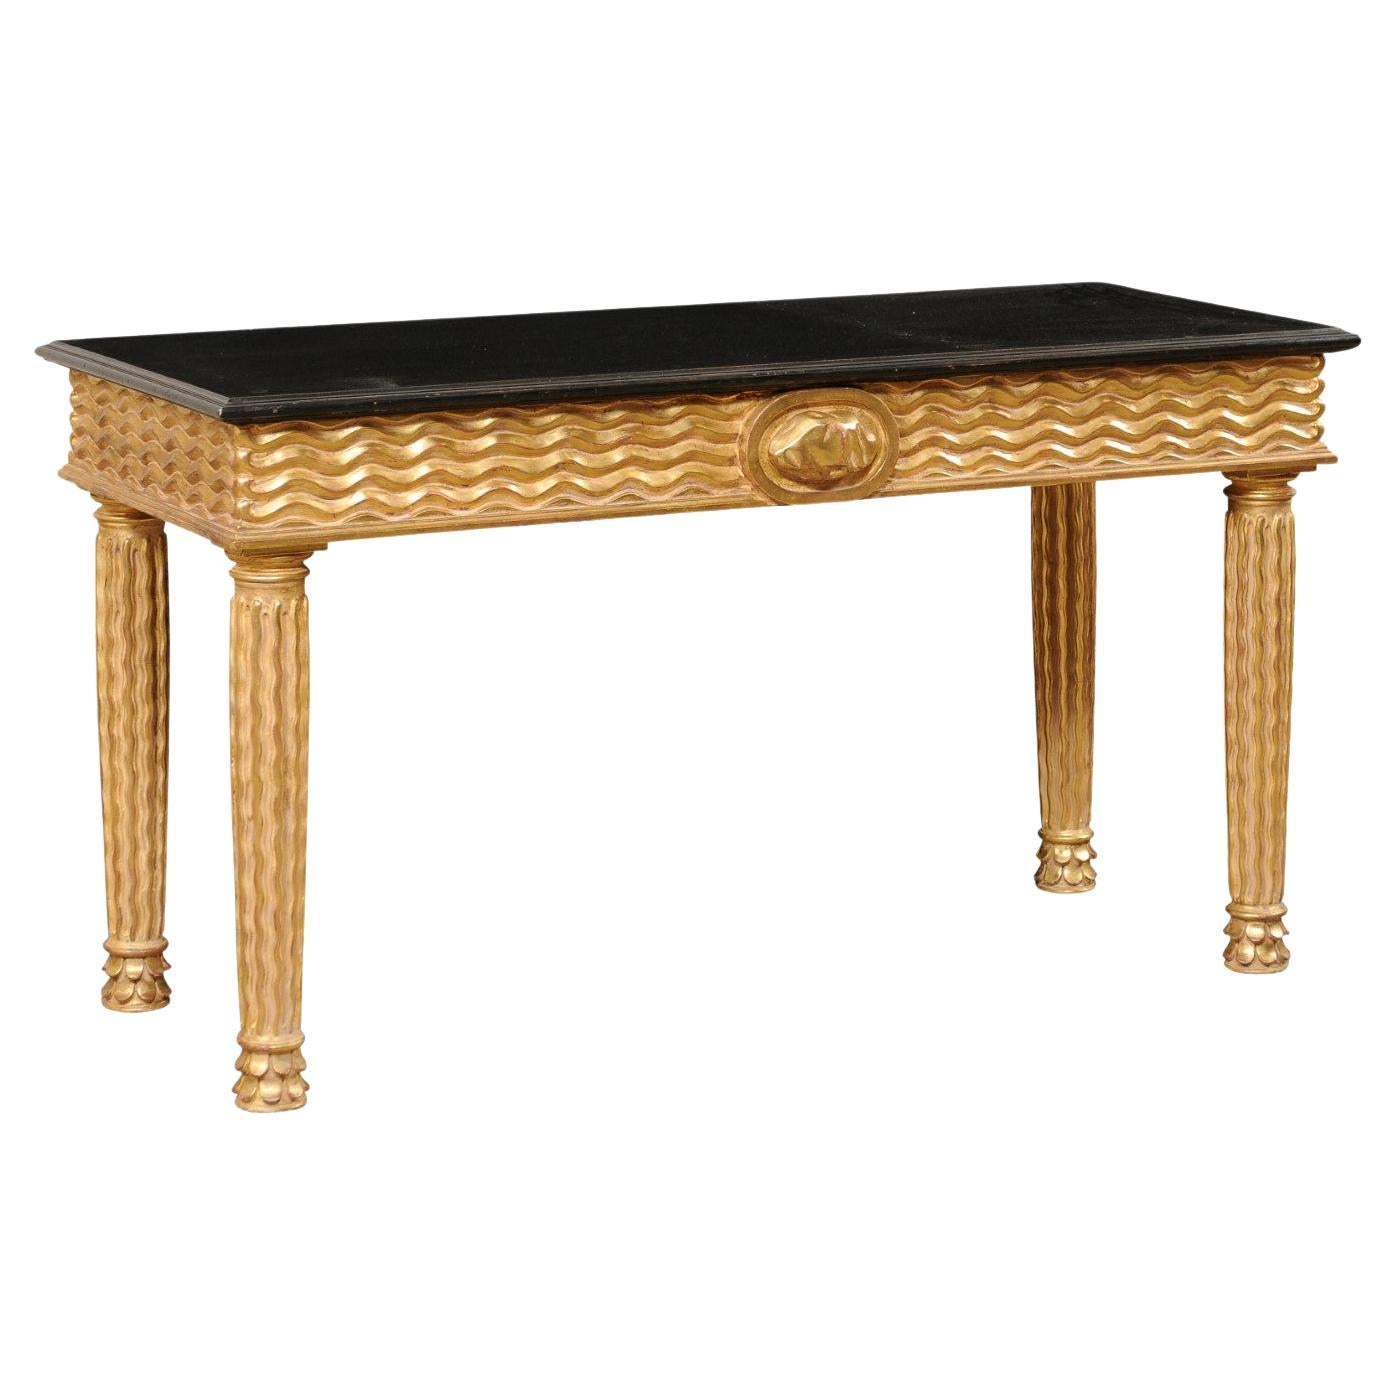 Table console italienne en bois sculptée à la main de main de main de maître avec de véritables feuilles d'or